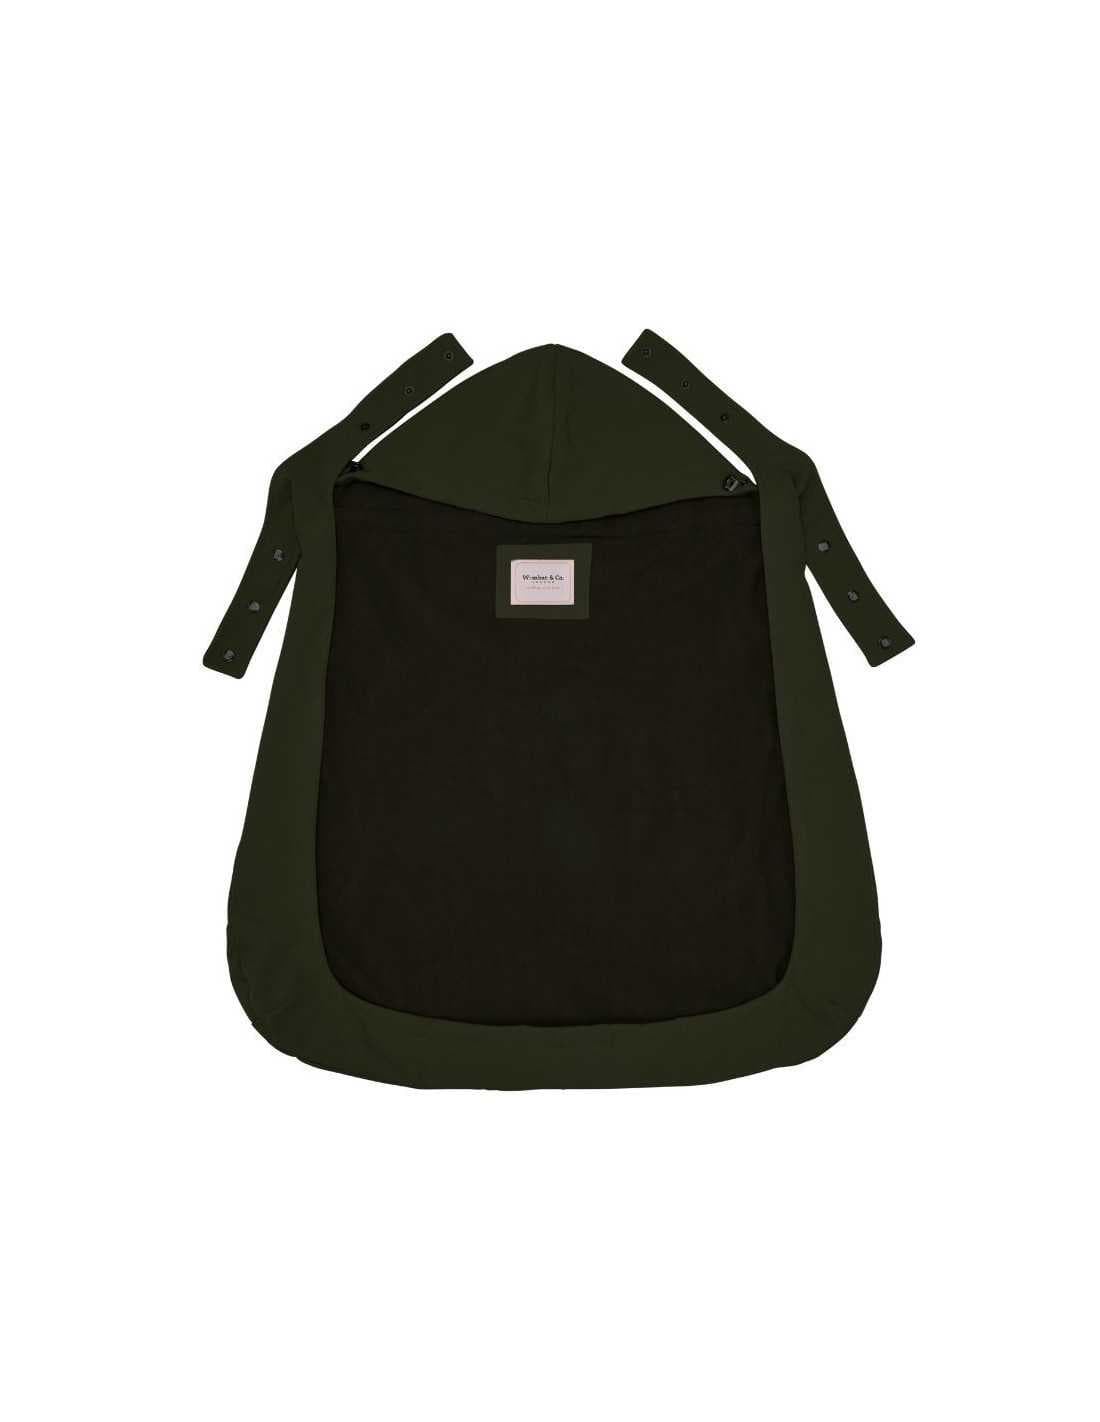 Cobertor de porteo Wombat Shell Verde - Imagen 2